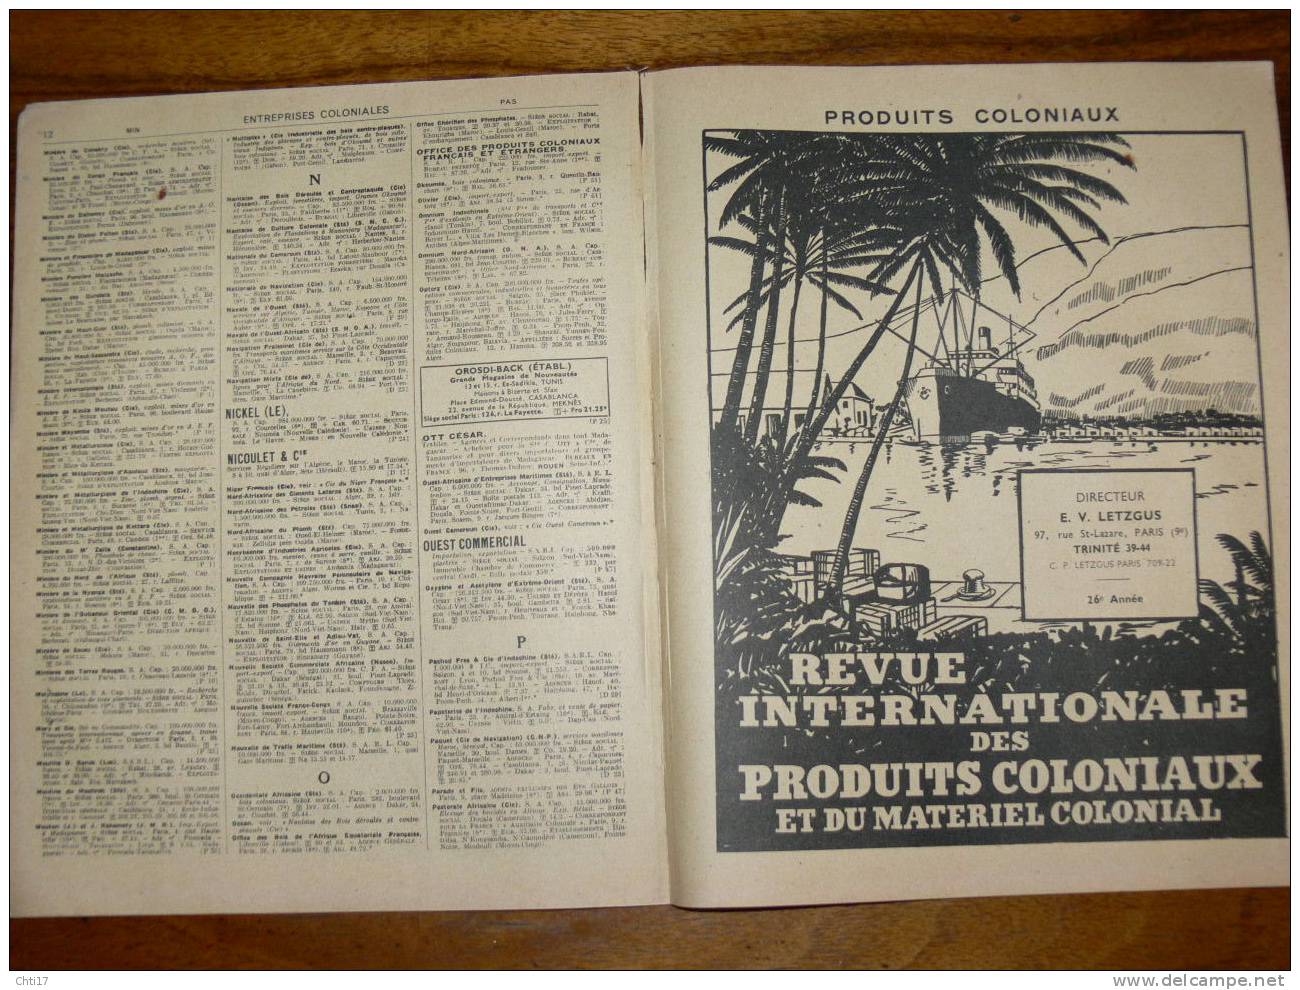 LISTE DES ENTREPRISES COLONIALES  FRANCAISES COMMERCE INDUSTRIE AGRICULTURE  ANNUAIRE BOTTIN 1951 - Telefonbücher